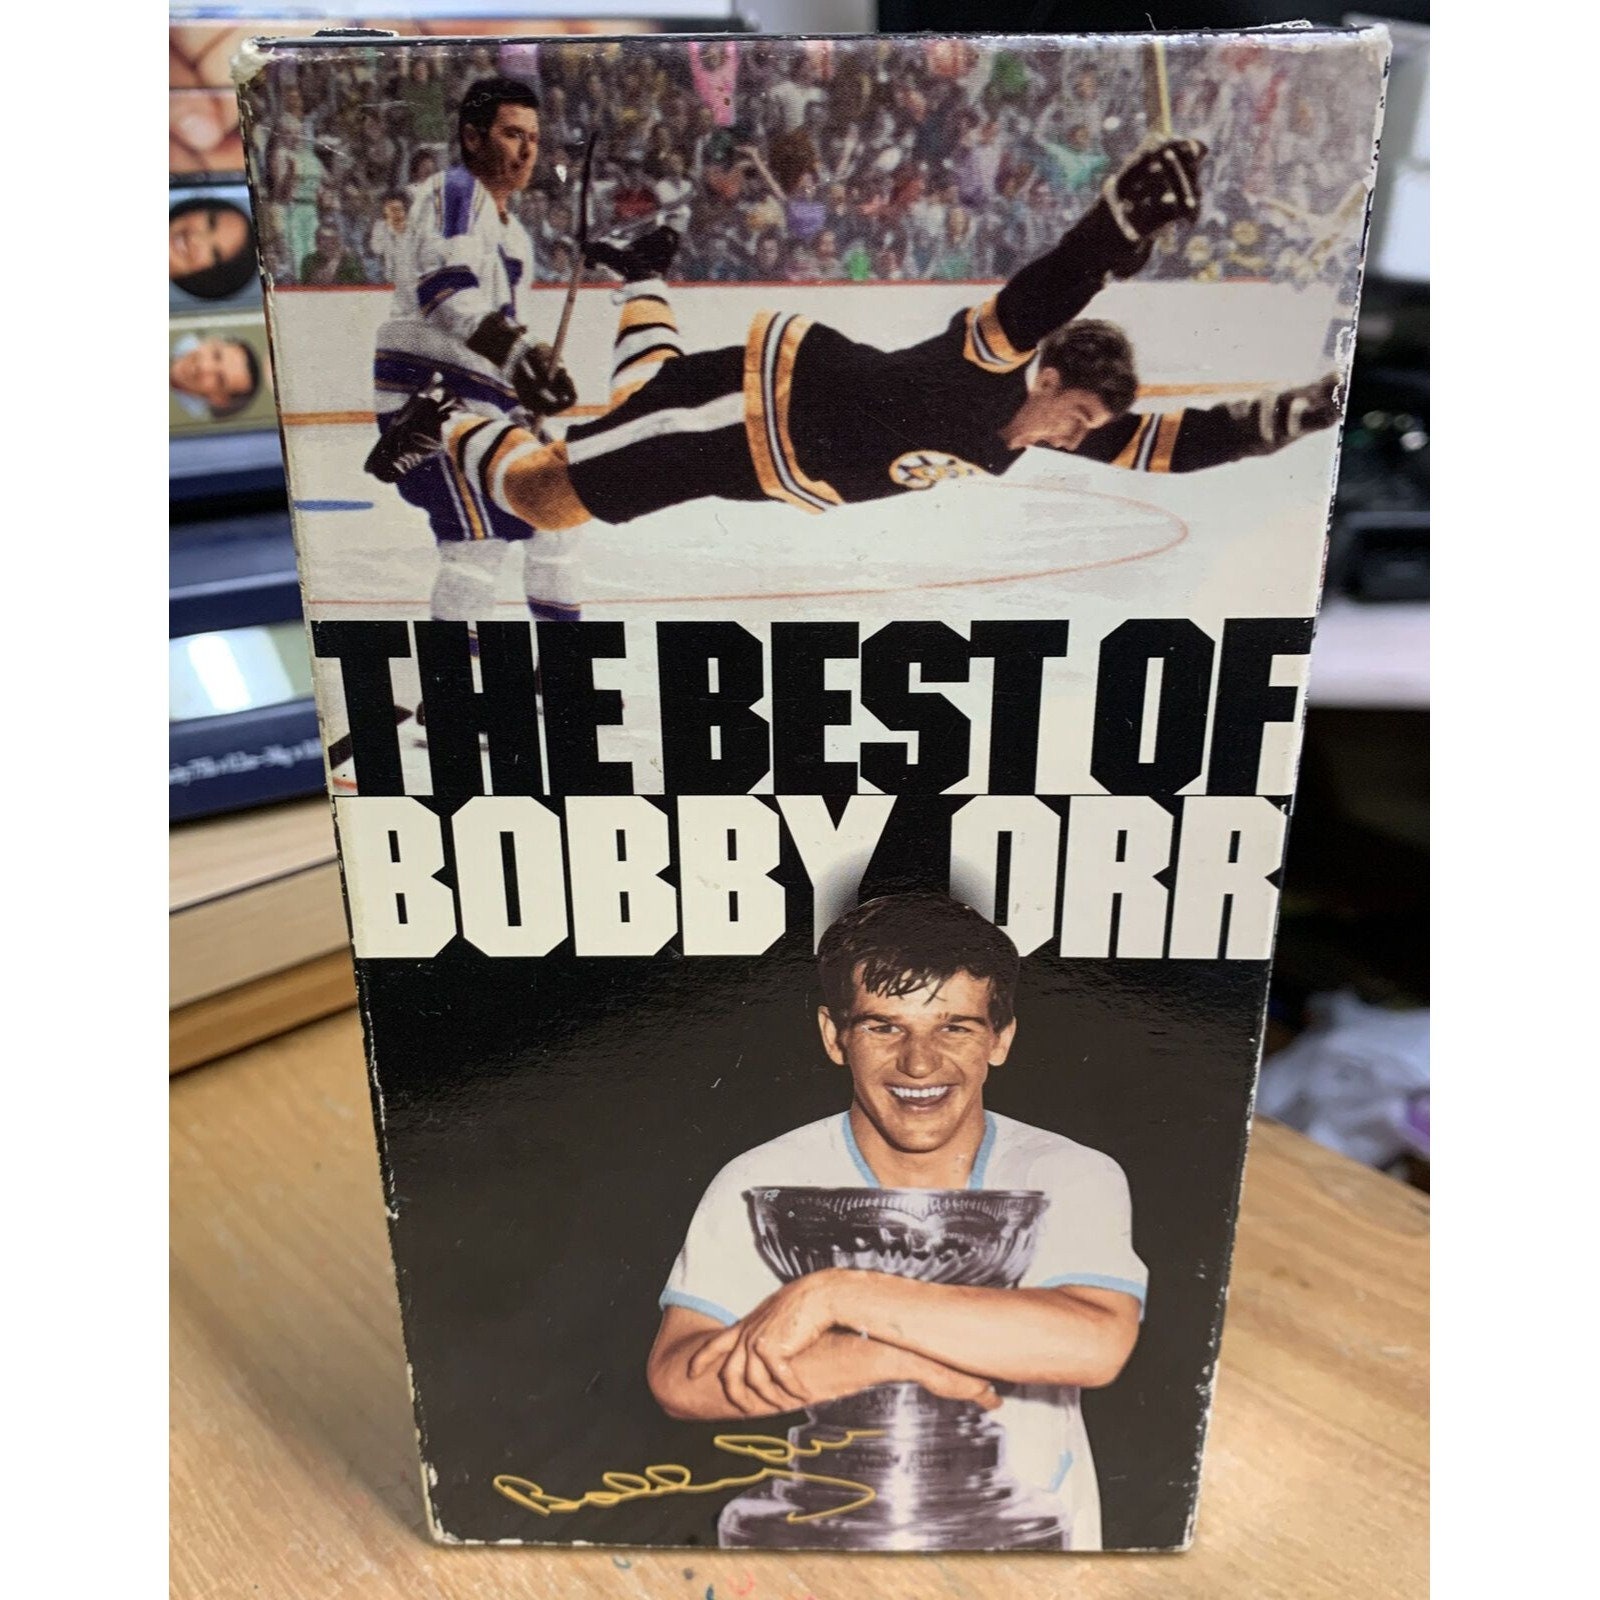 The best of Bobby Orr